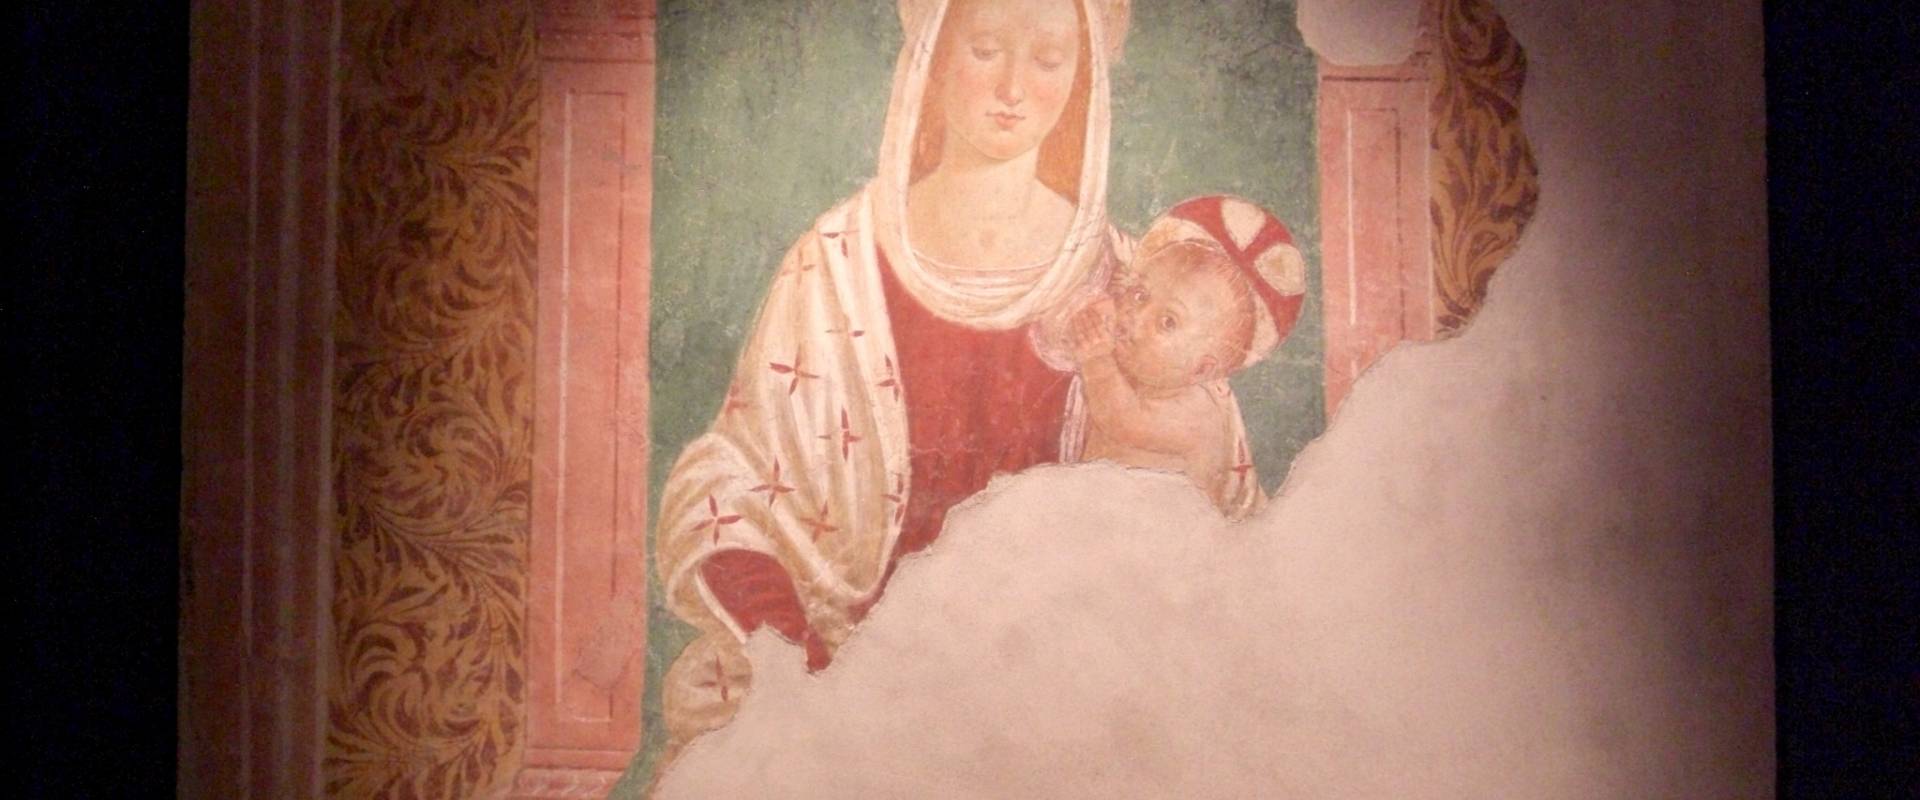 Museo Mambrini Madonna del latte foto di Clawsb